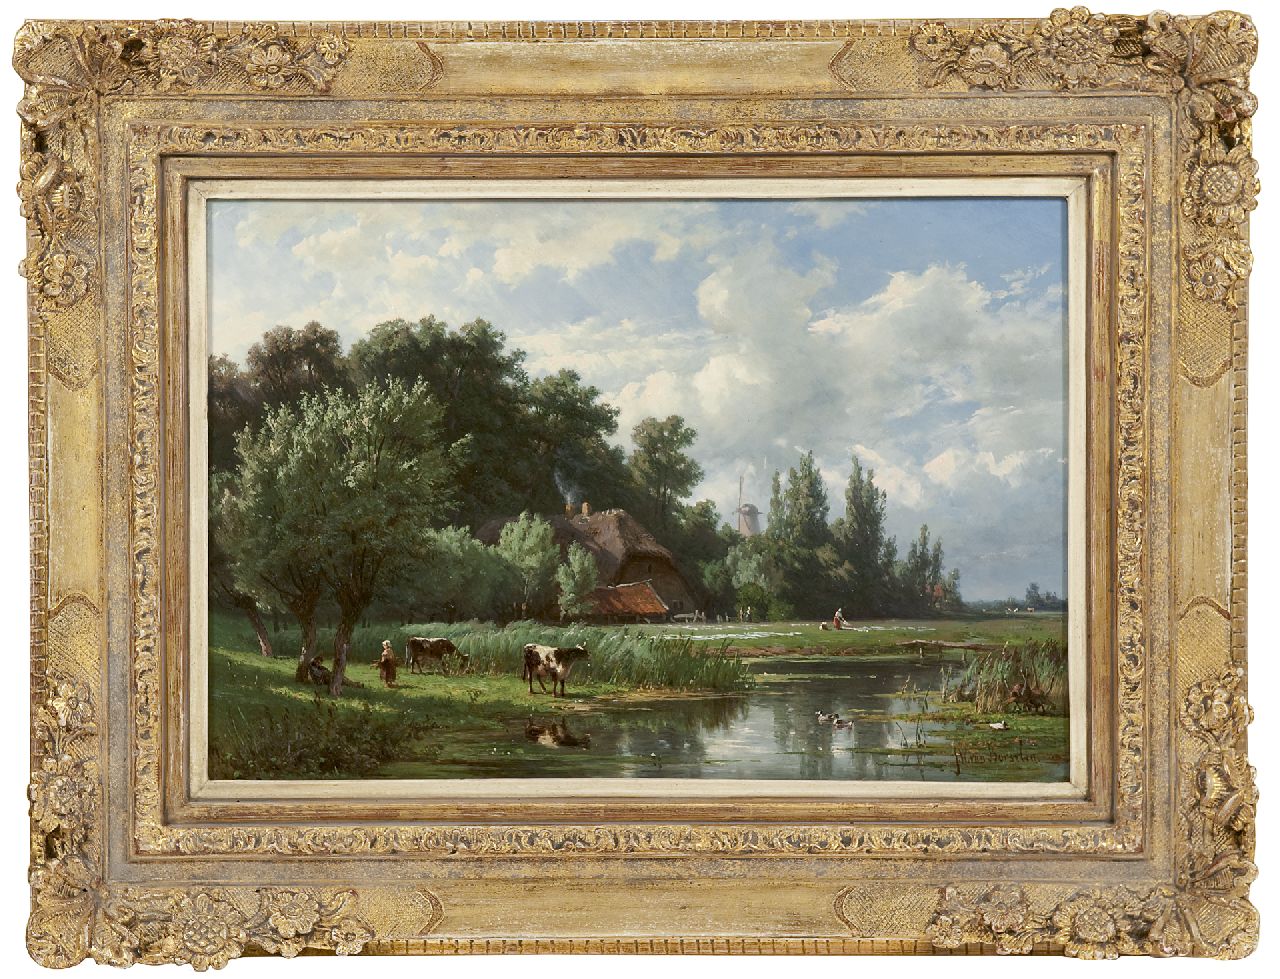 Borselen J.W. van | Jan Willem van Borselen, Hollands waterlandschap, olieverf op paneel 30,2 x 44,3 cm, gesigneerd rechtsonder